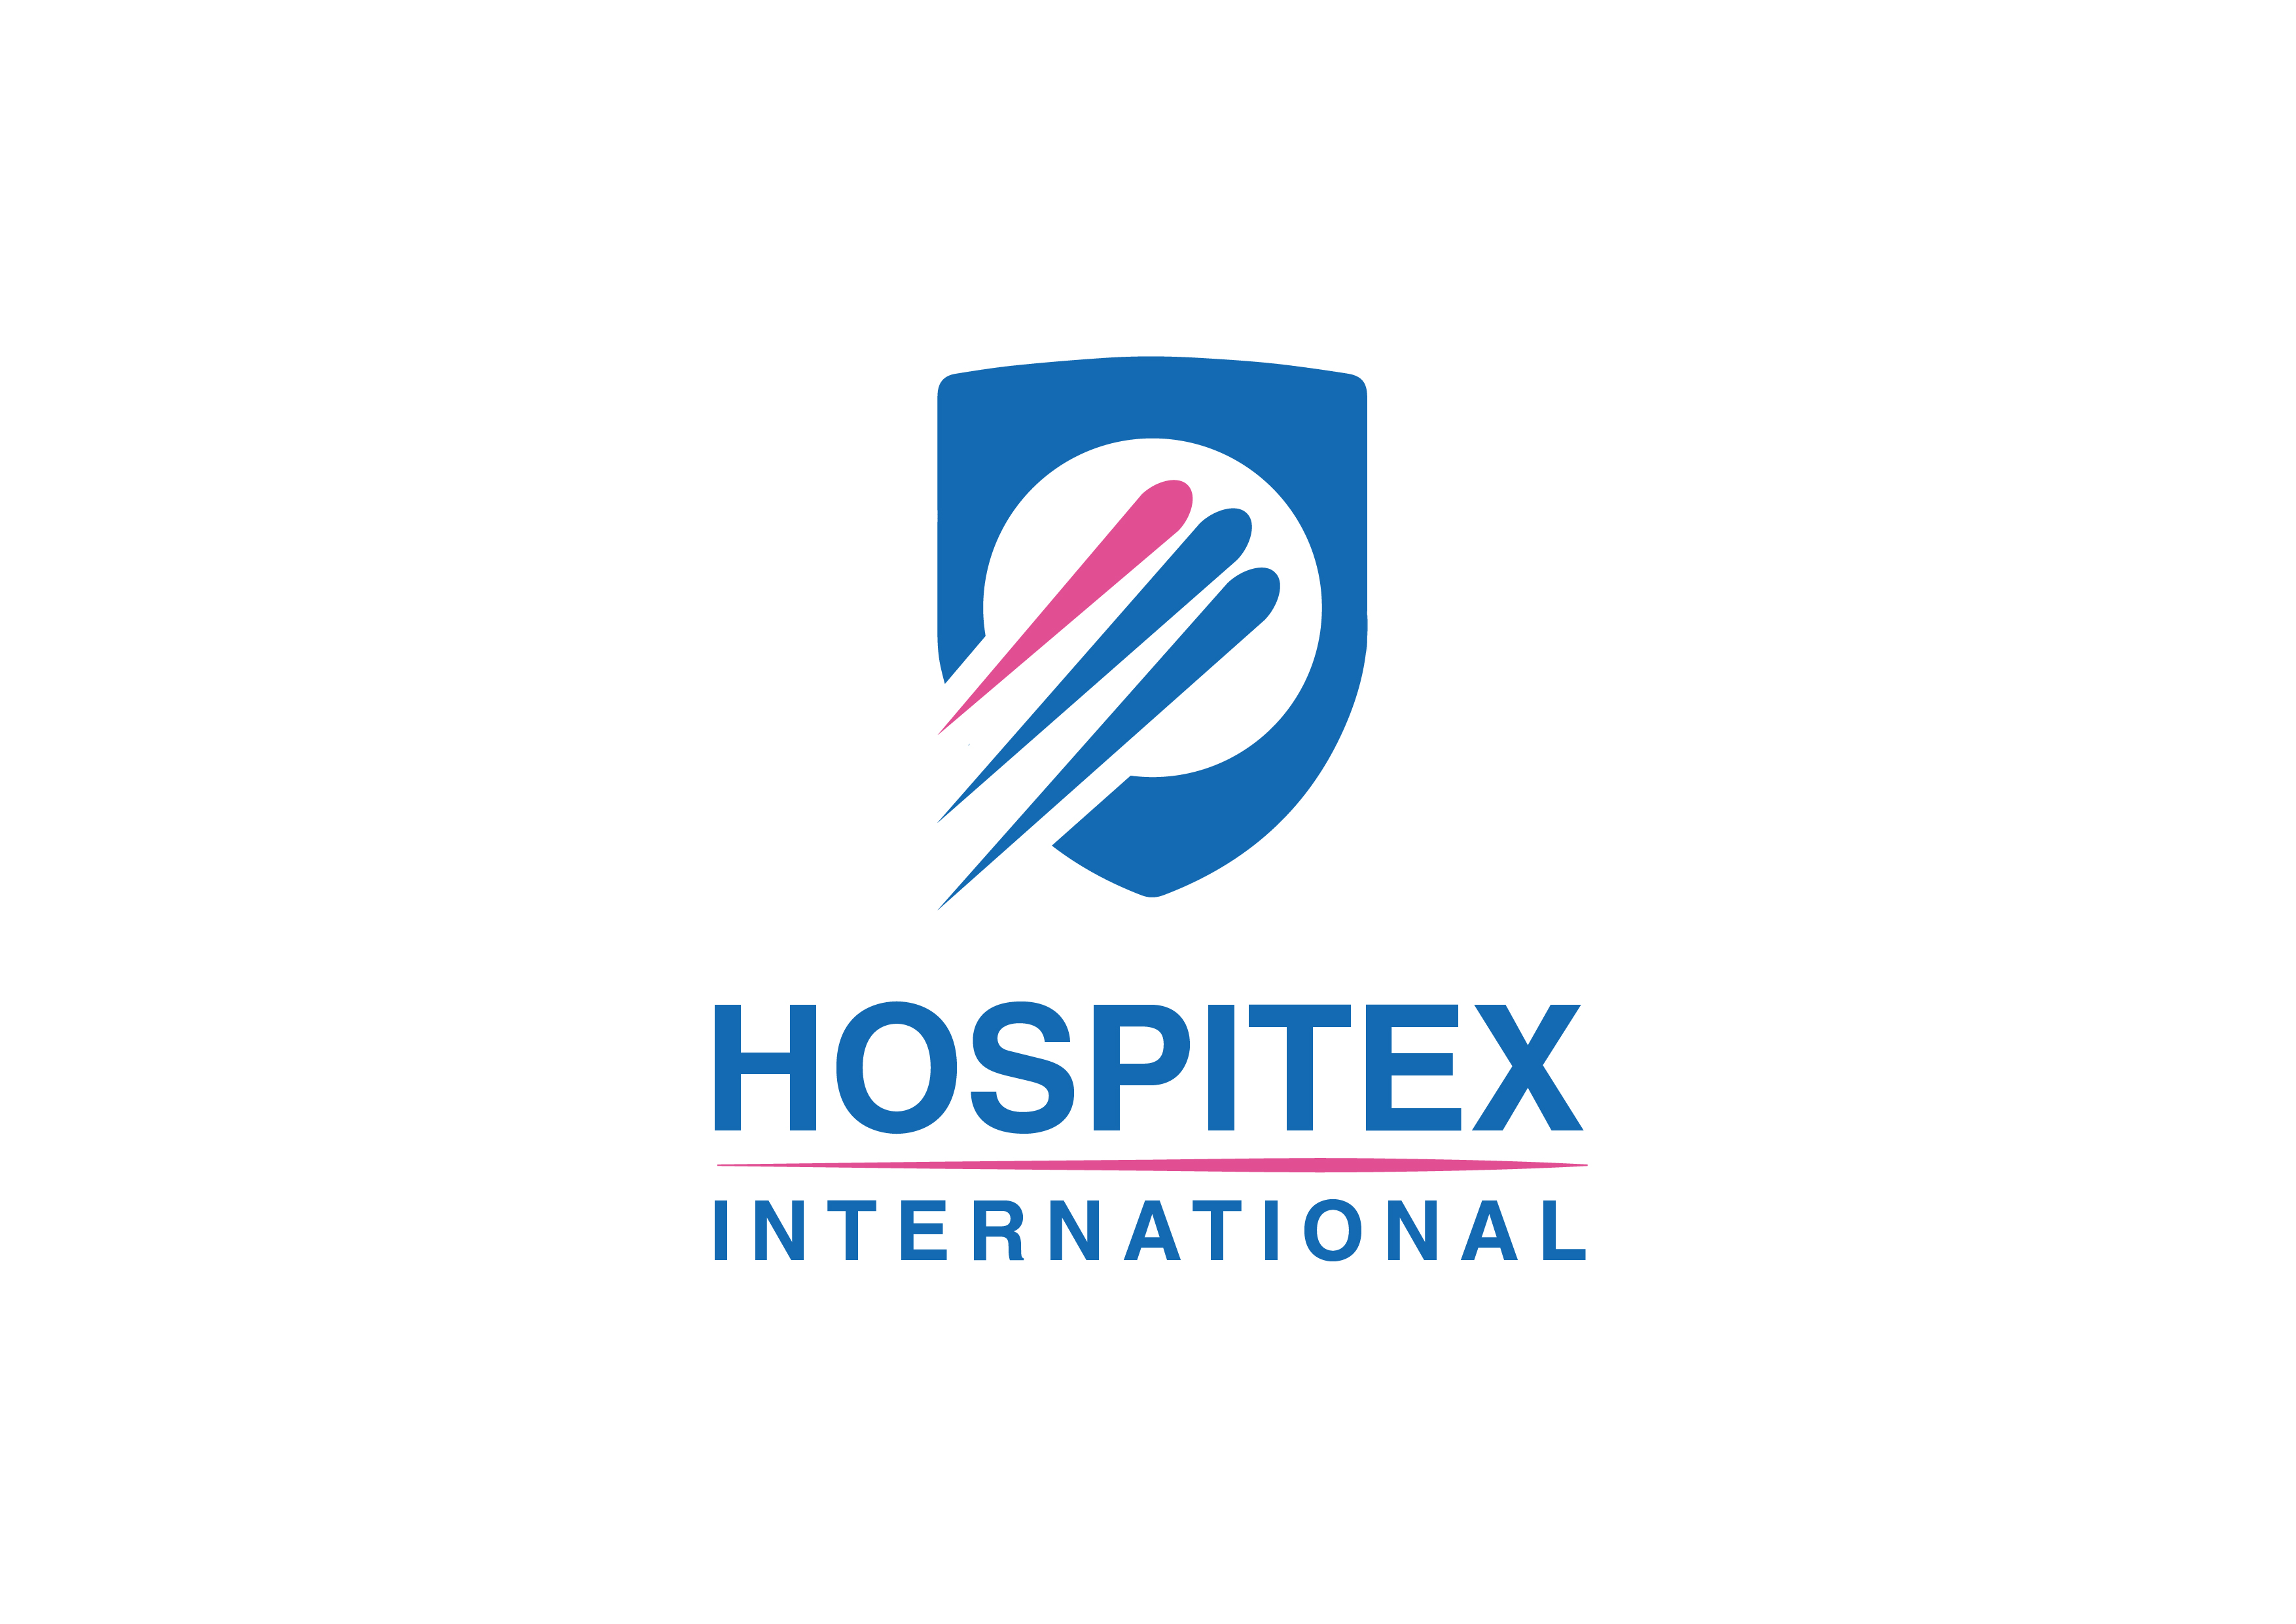 Hospitex International srl